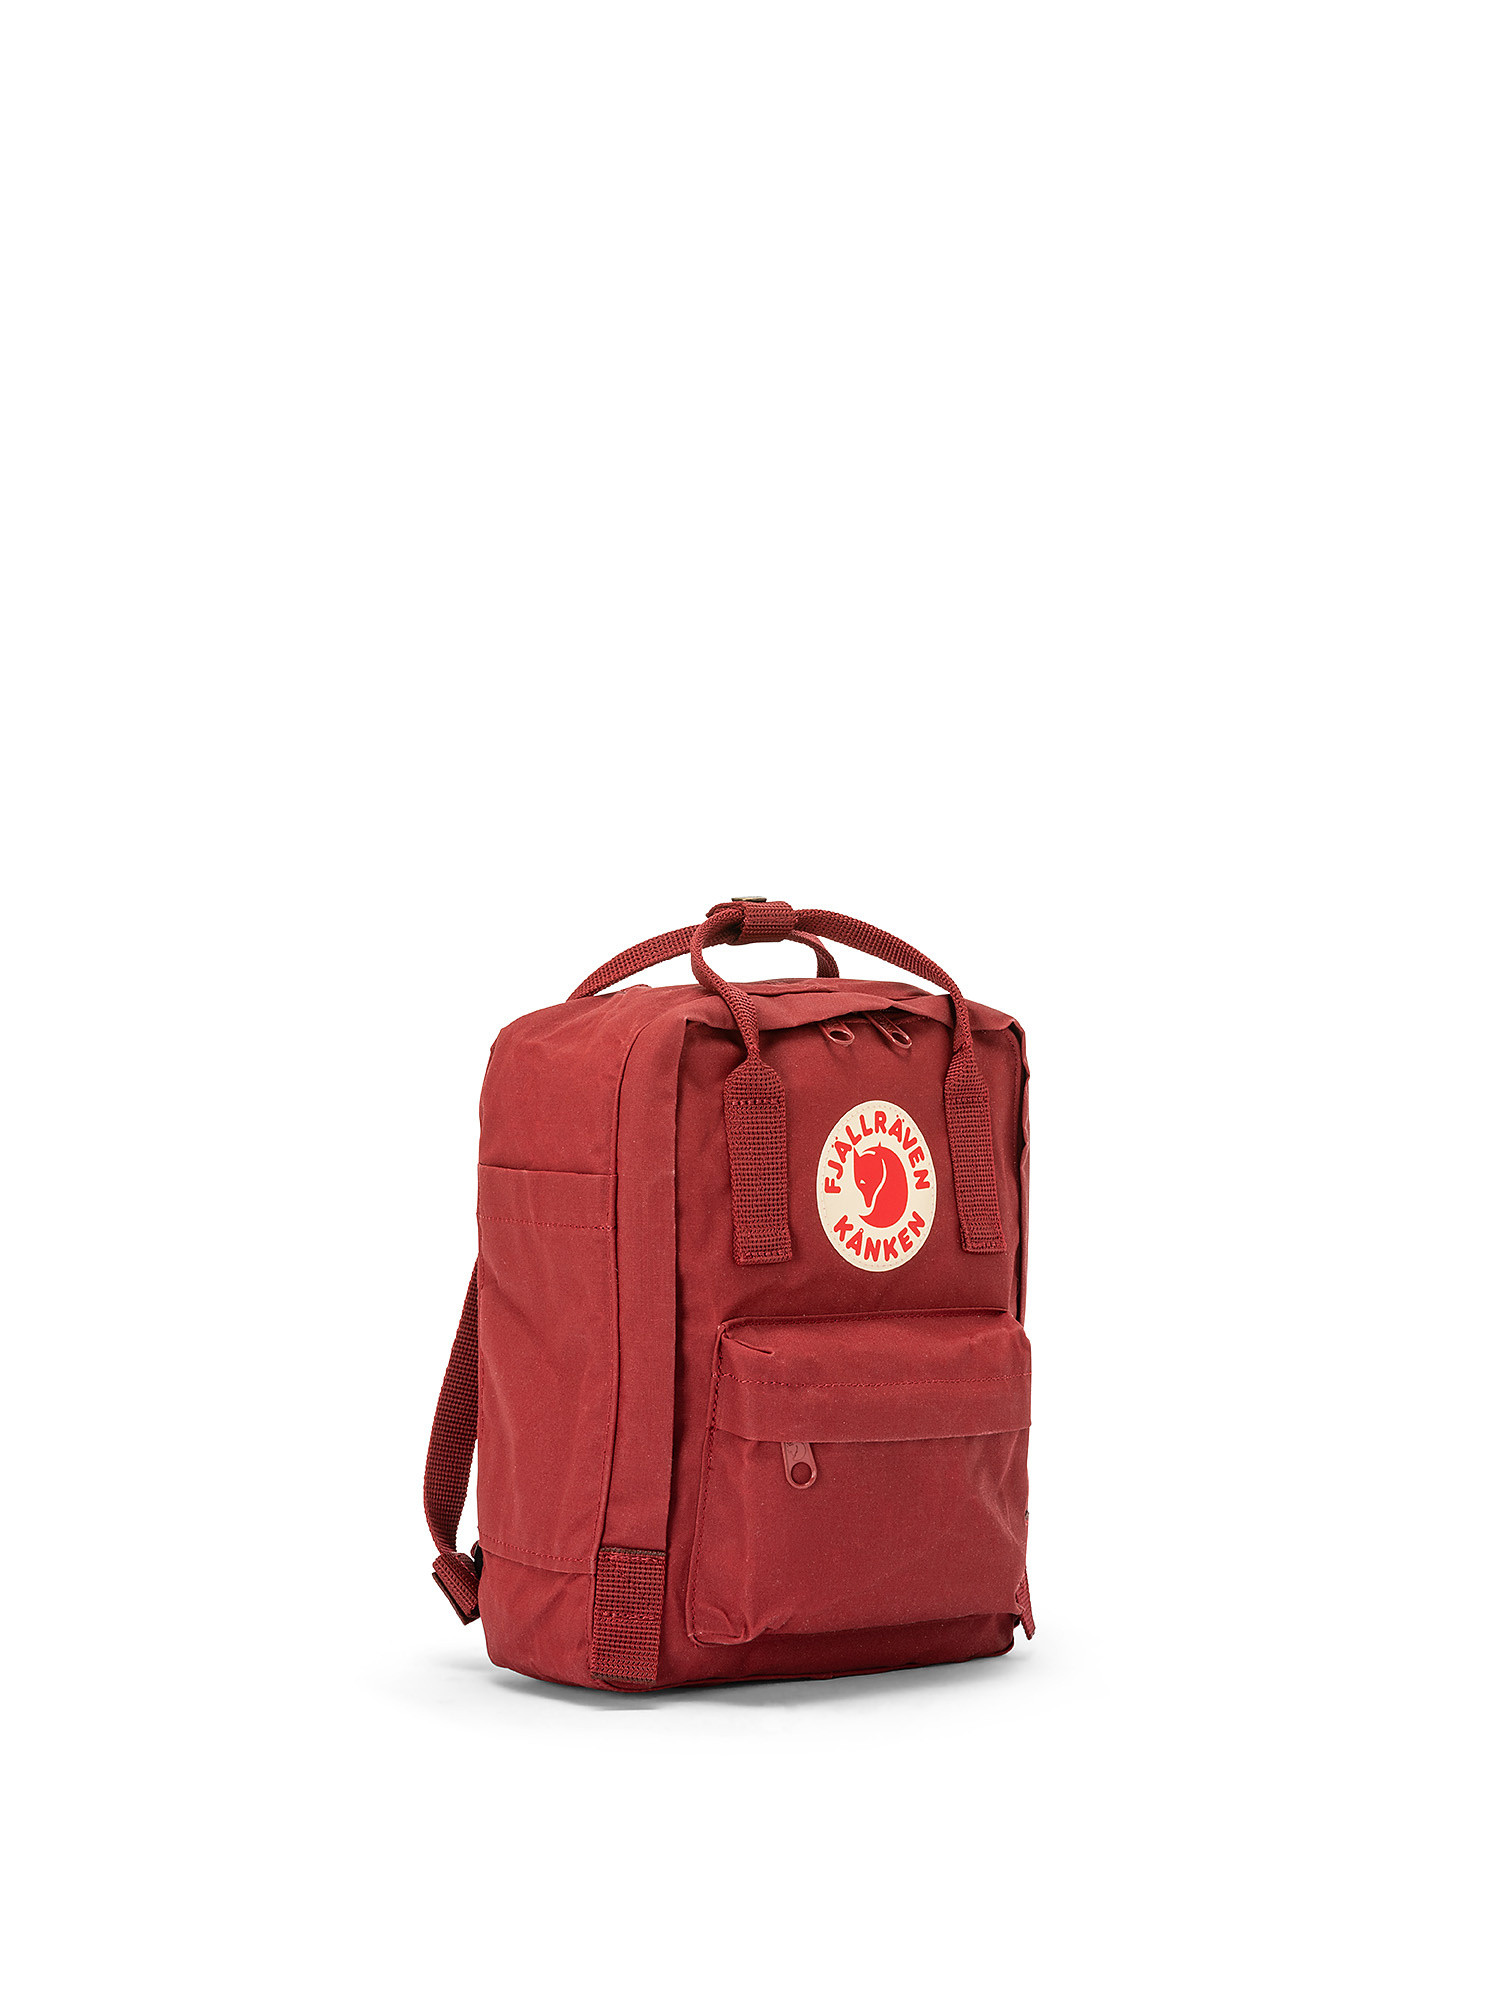 Kanken mini backpack, Red Bordeaux, large image number 1